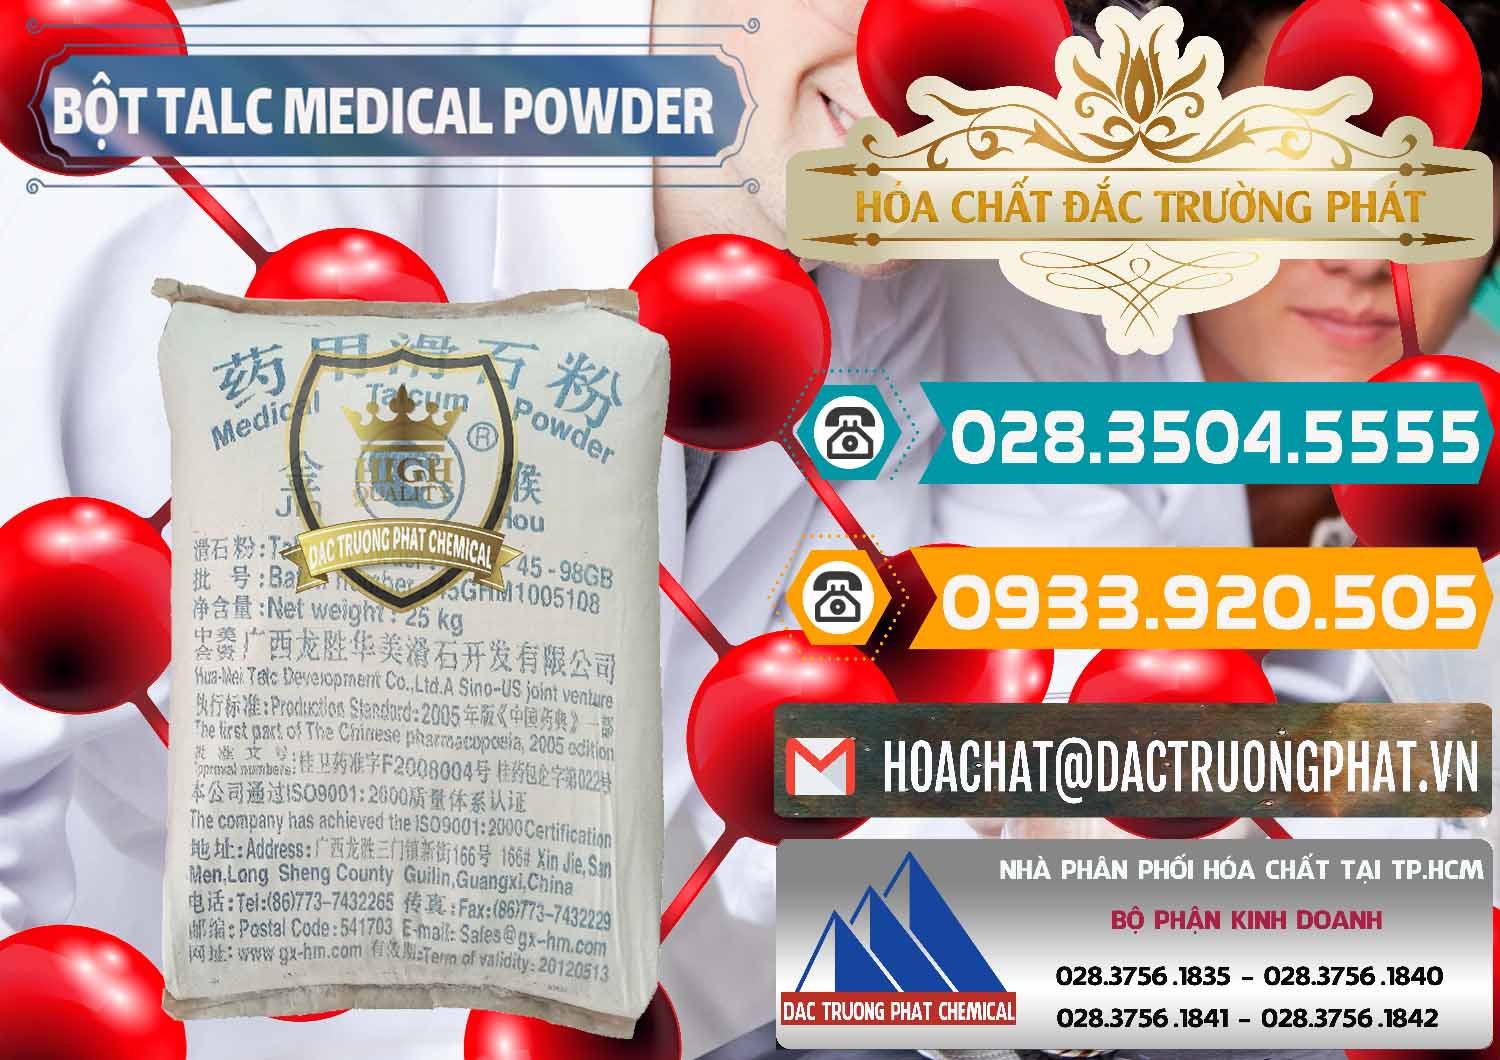 Cty chuyên bán ( cung cấp ) Bột Talc Medical Powder Trung Quốc China - 0036 - Cty kinh doanh và cung cấp hóa chất tại TP.HCM - congtyhoachat.vn